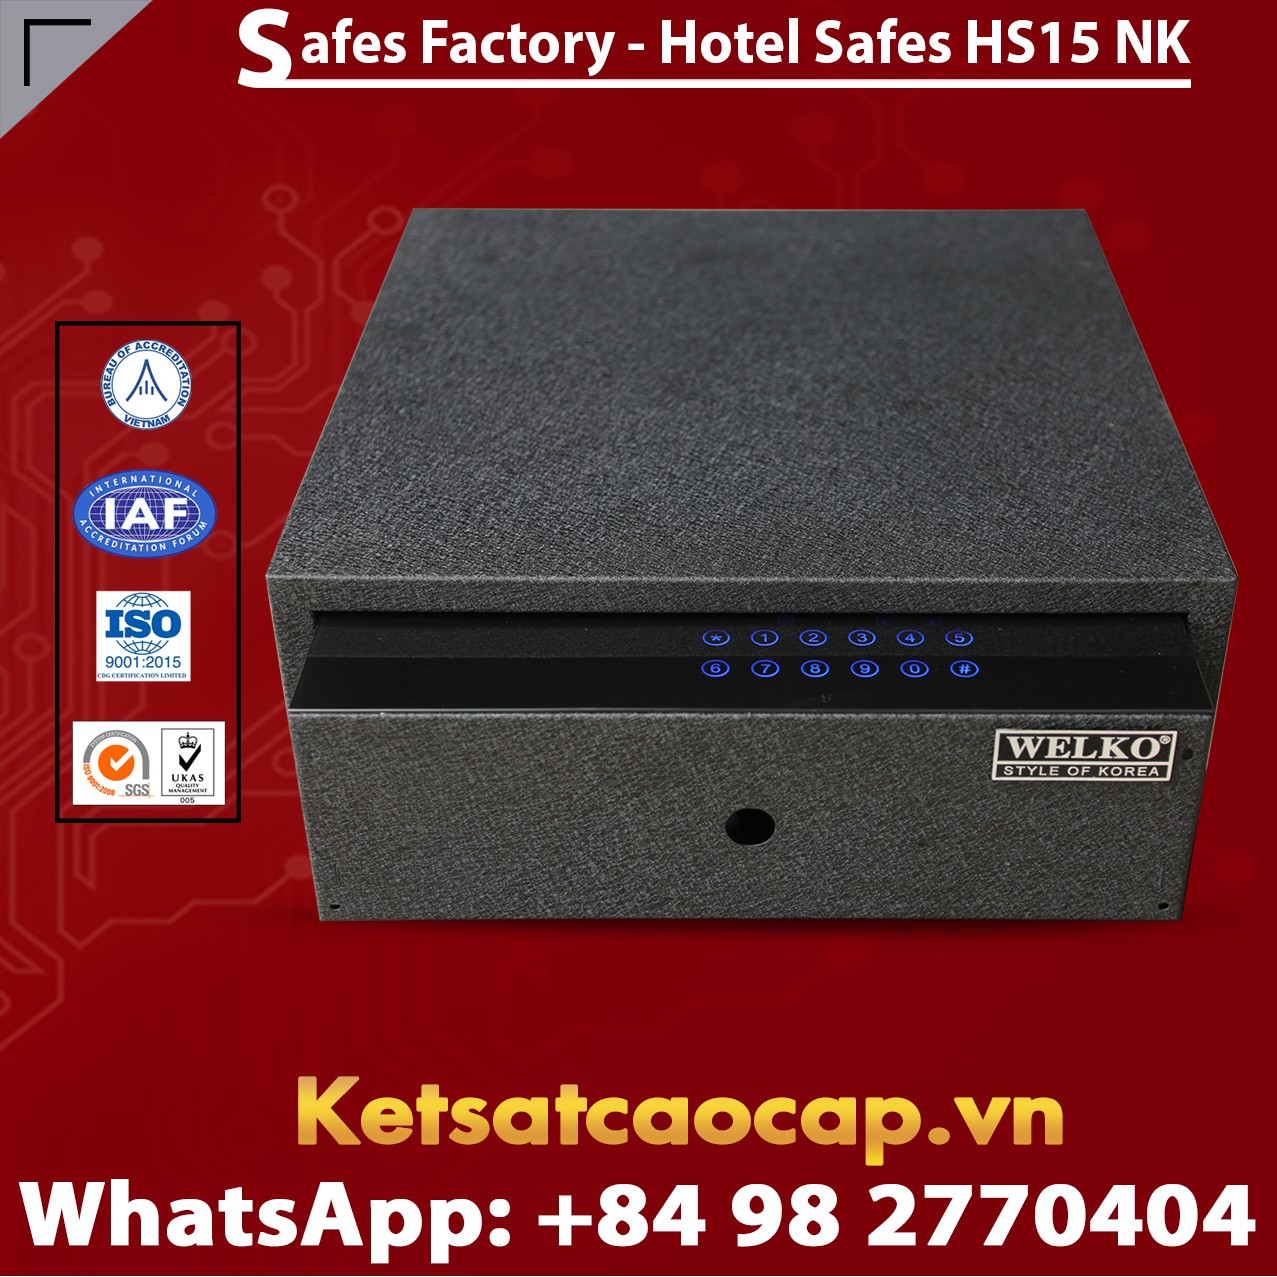 Best Hotel Safe For Home WELKO HS15 NK